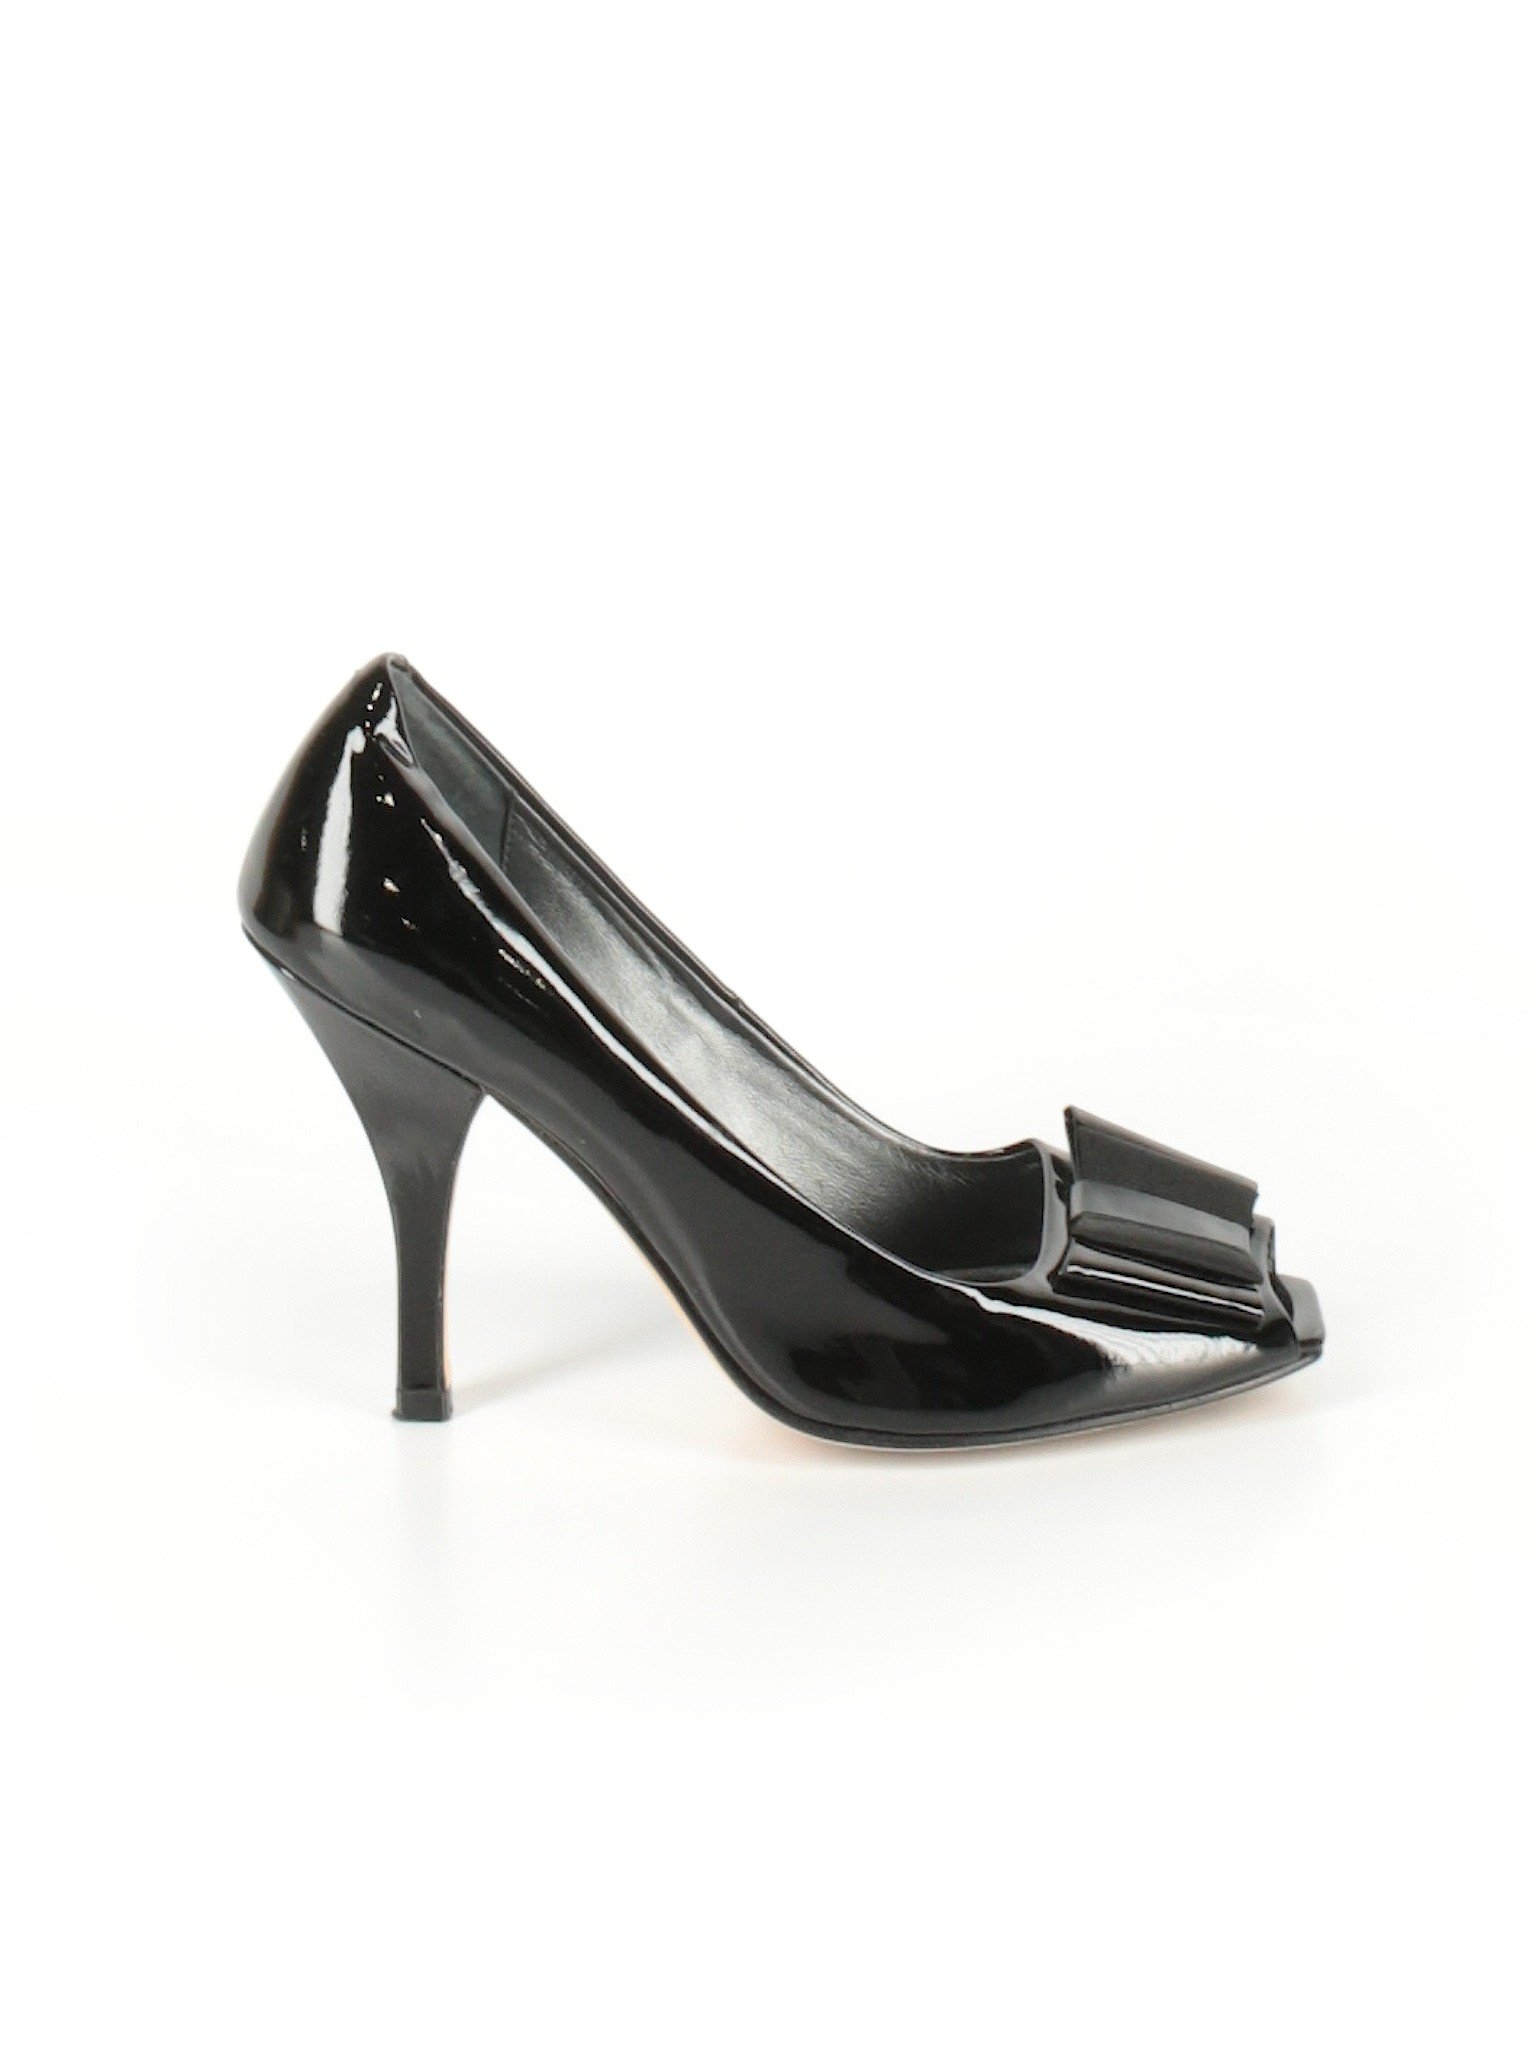 Saks Fifth Avenue Women Black Heels US 8.5 | eBay